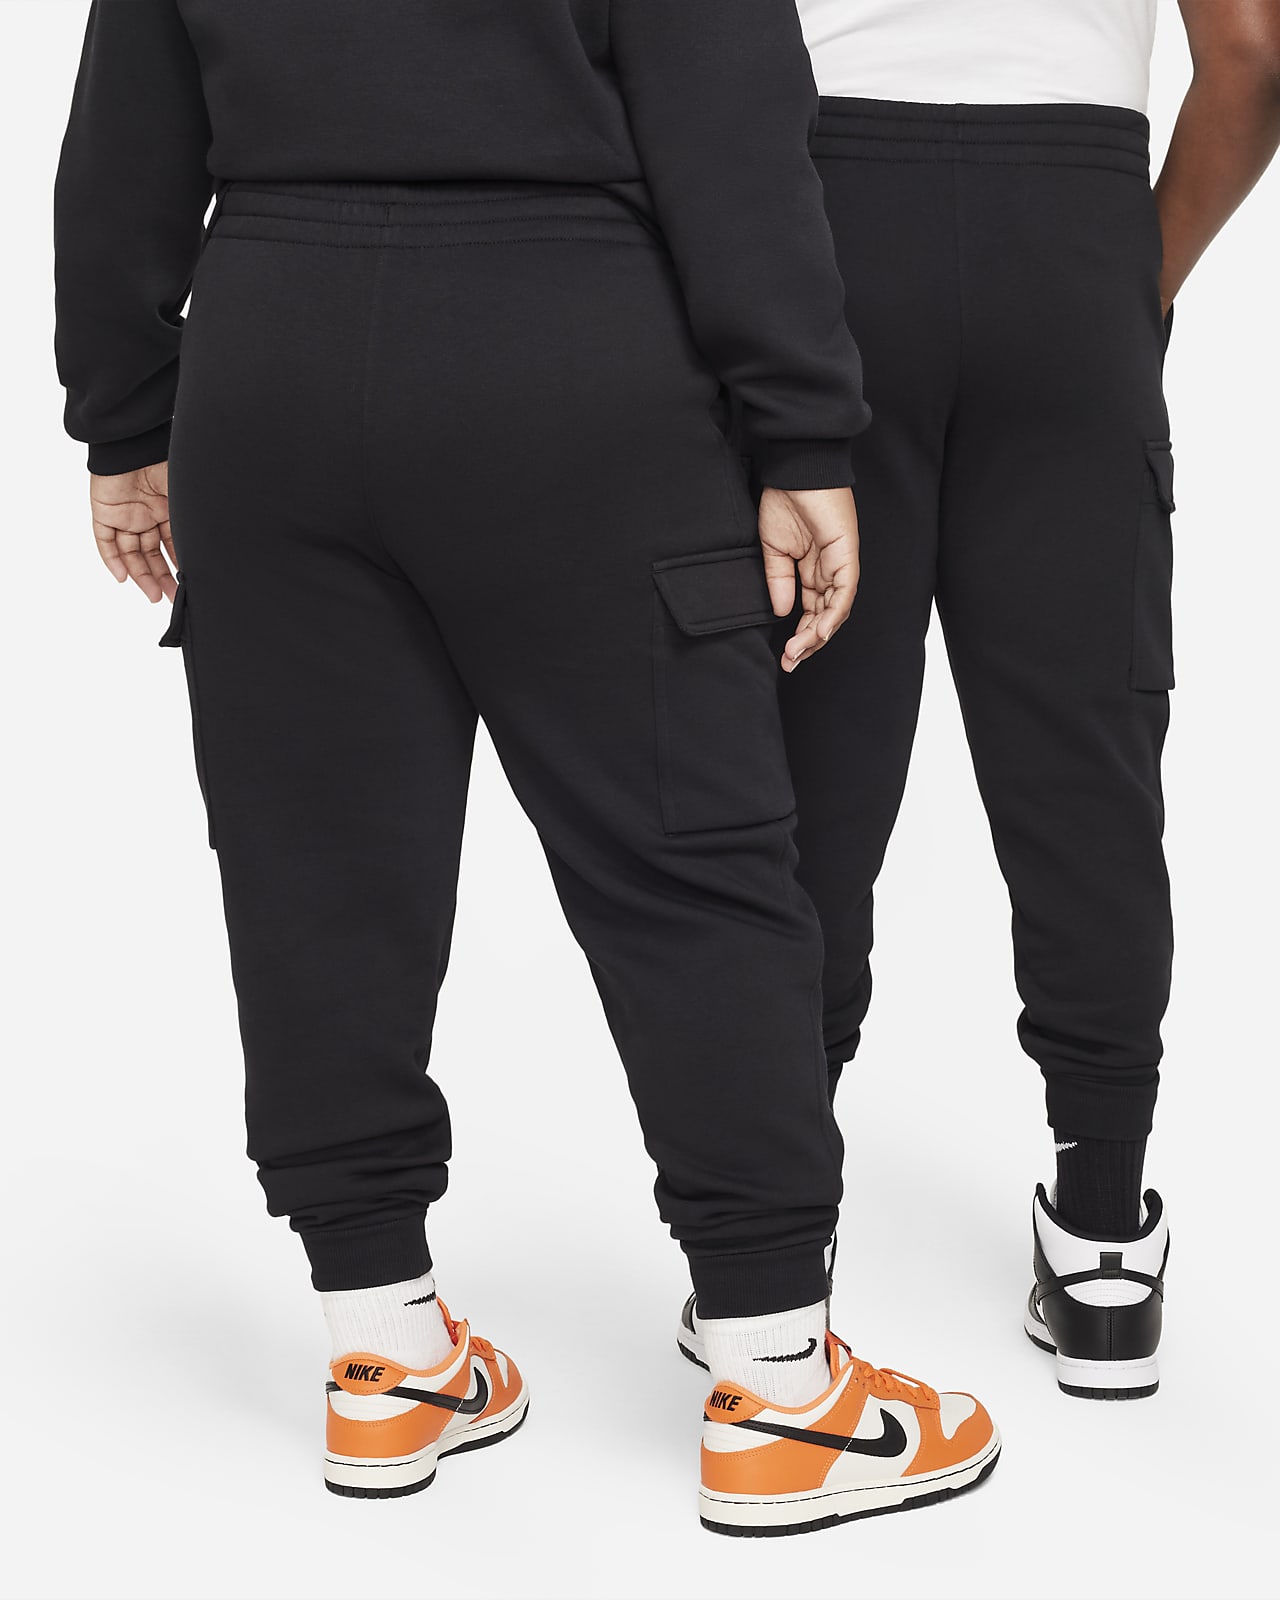 Nike Air Fleece Cargo Pants – DTLR